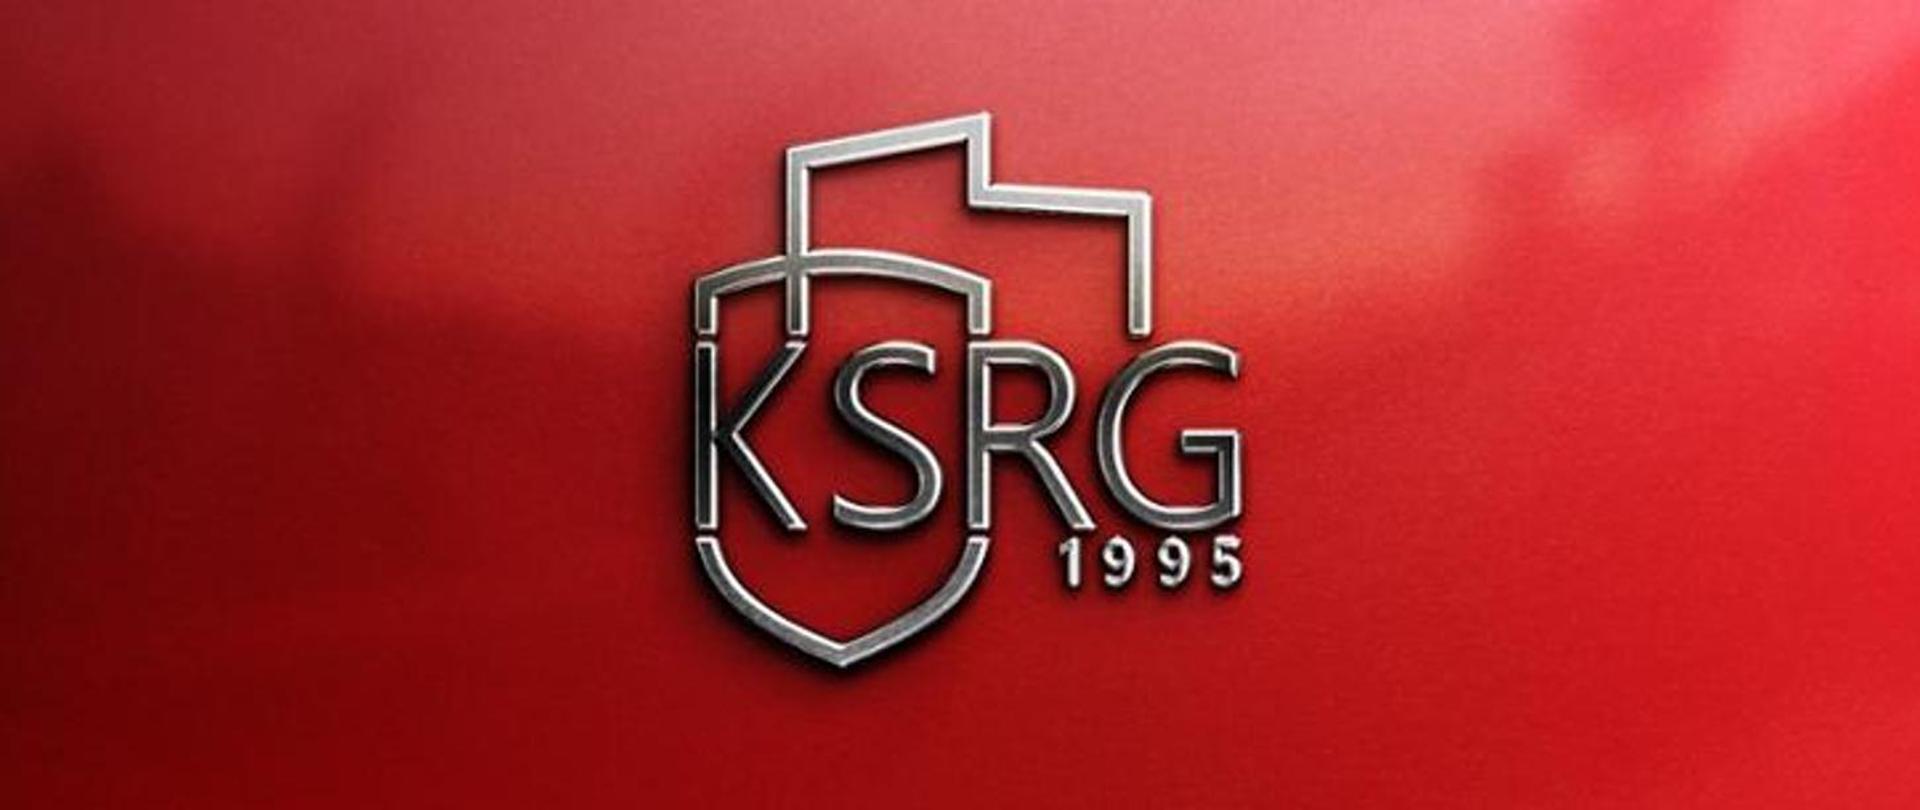 Na czerwonym tle napis KSRG i pod nim rok 1995